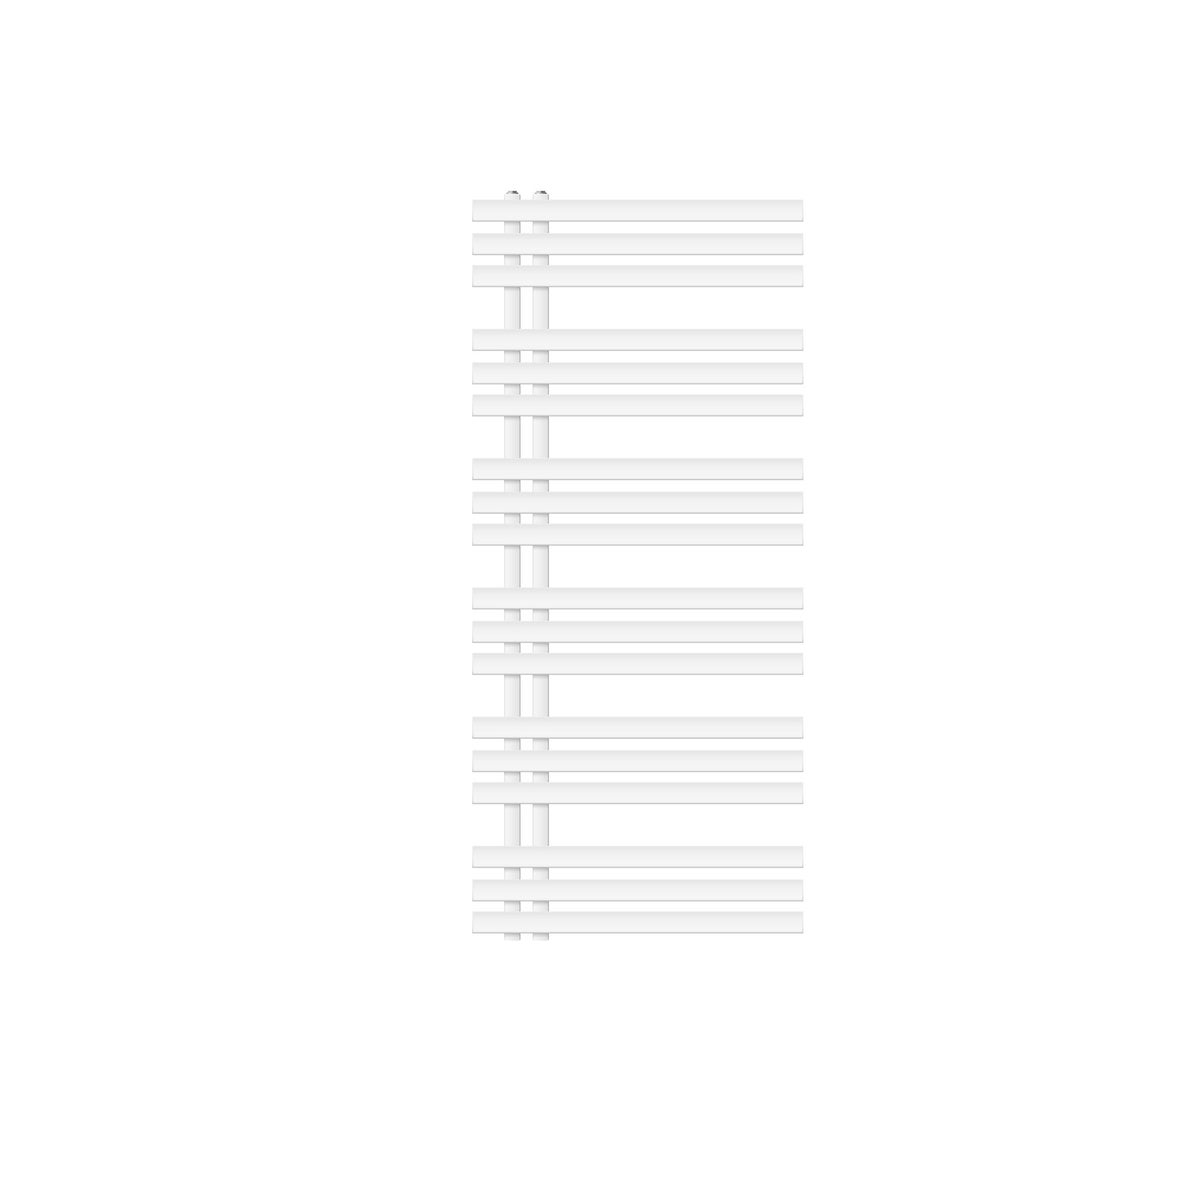 LuxeBath Design Badheizkörper Iron EM 600 x 1400 mm, Weiß, Designheizkörper Paneelheizkörper Flachheizkörper Heizkörper Handtuchwärmer Handtuchtrockner Bad/Wohnraum Heizung, inkl. Montage-Set